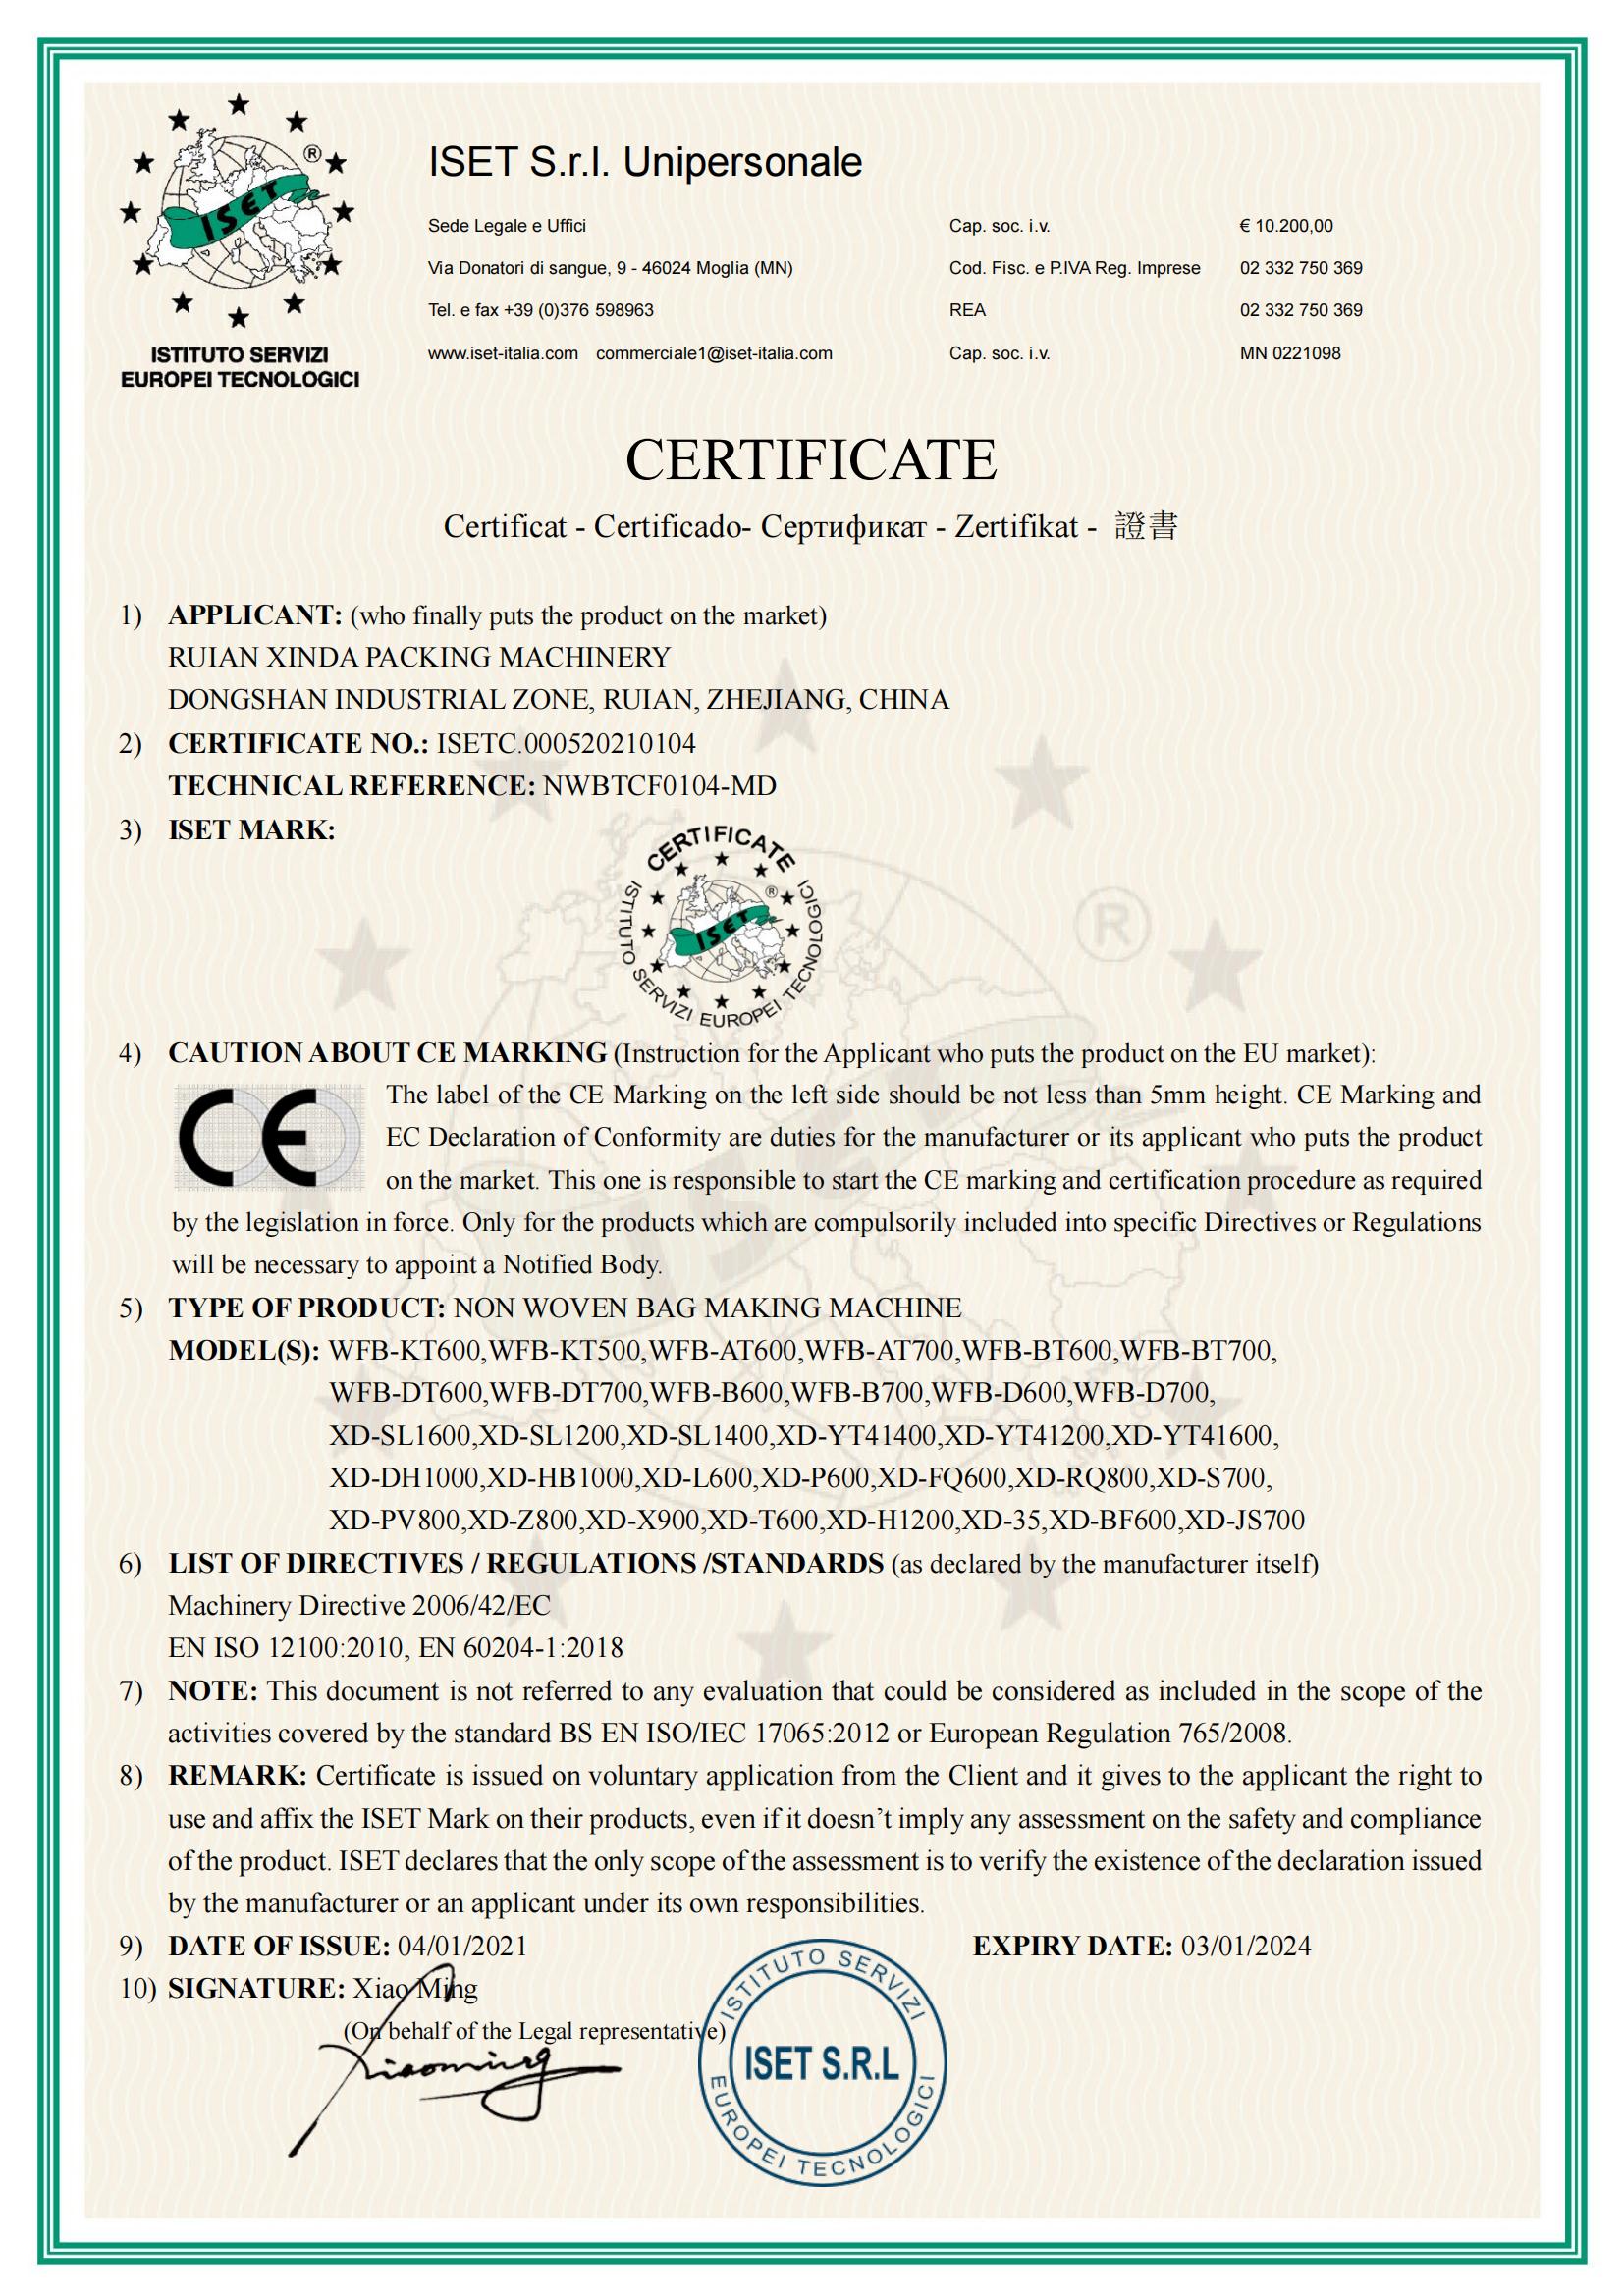 immagine del certificato (1)